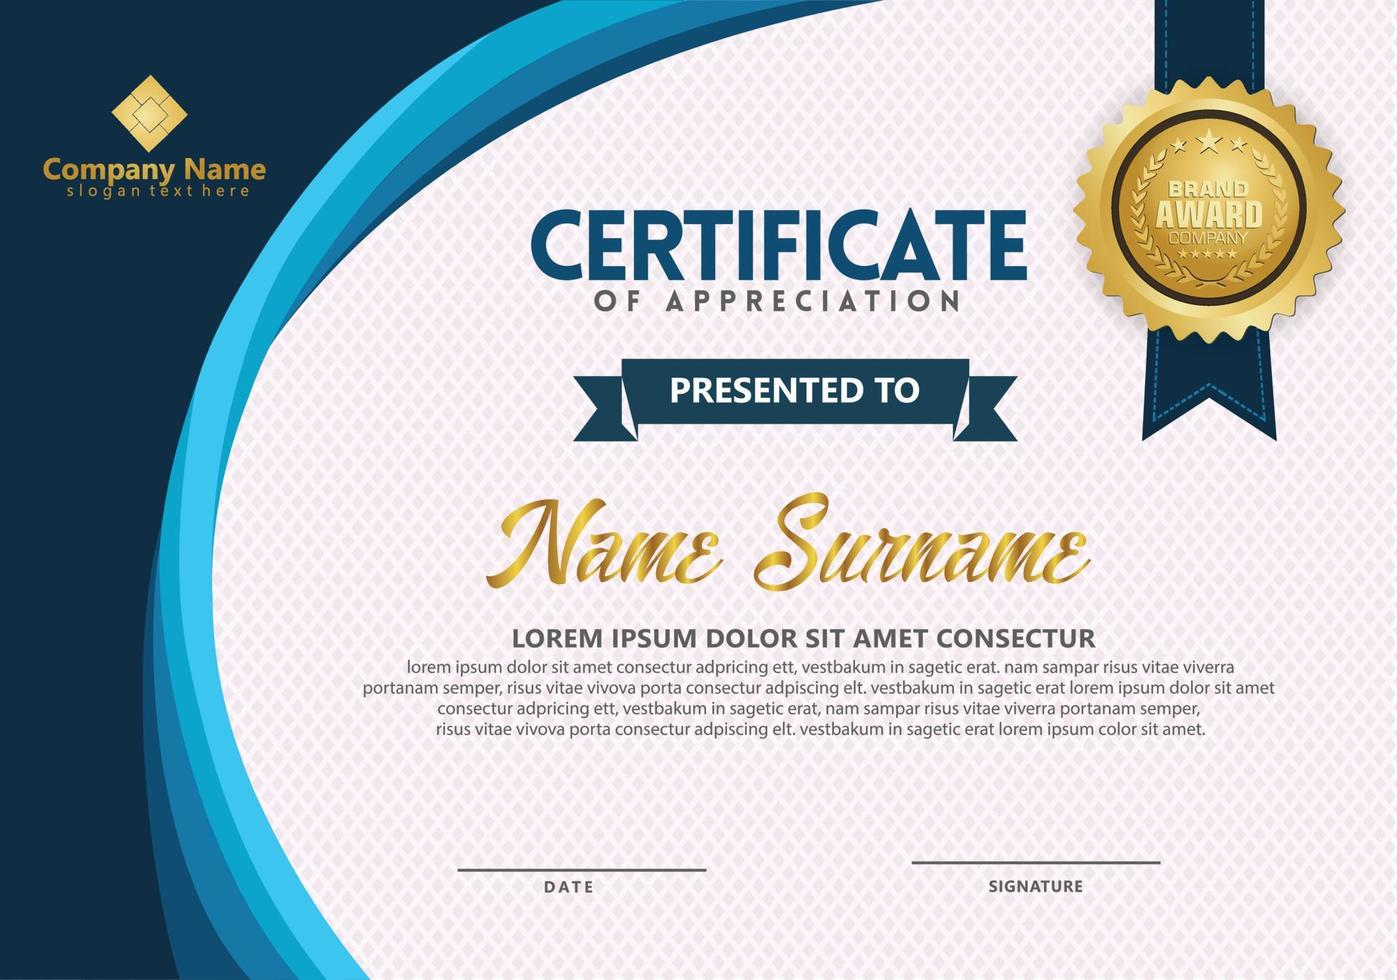 Modern certificate template vector